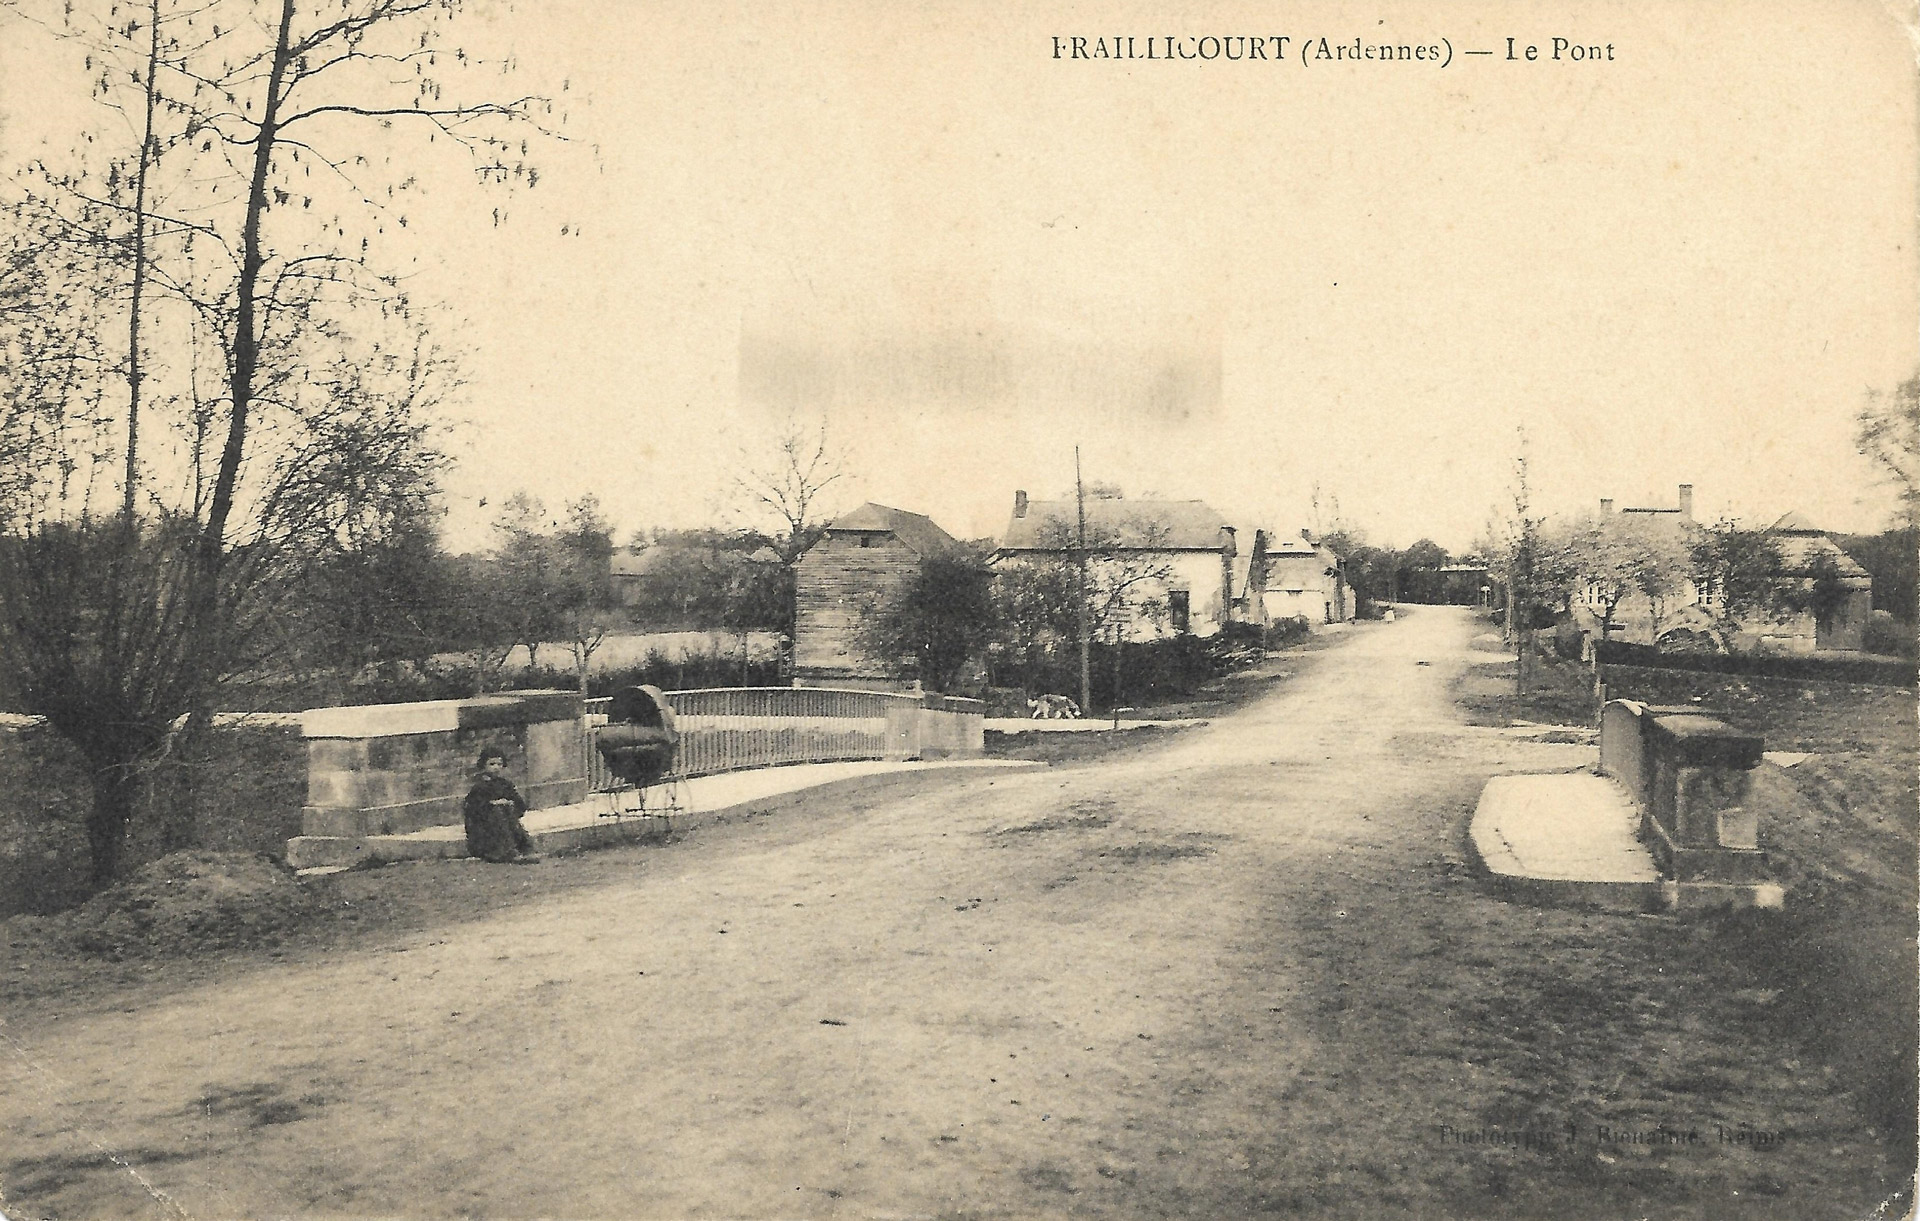 Vue sur le village de Fraillicourt depuis le pont sur La Malacquise, avant la guerre │ Carte postale circulée le 28.8.1913 │ col. pdgit1918